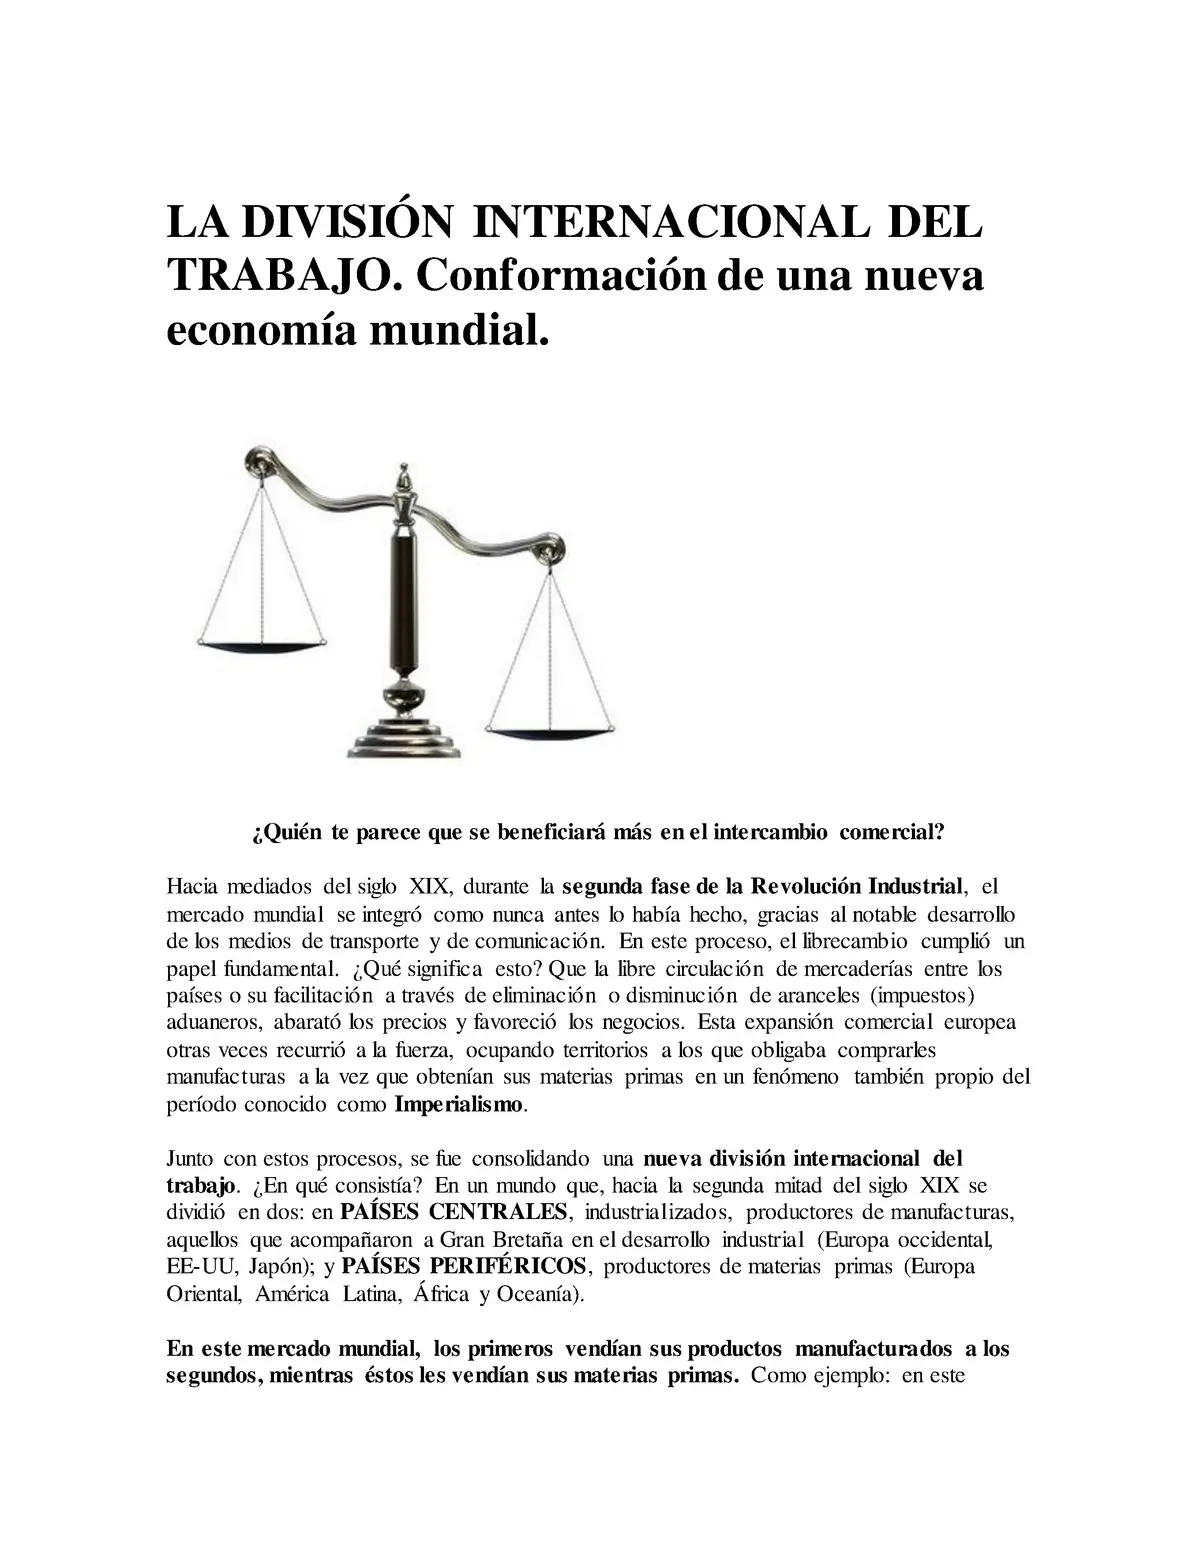 división internacional del trabajo resumen - Cómo se dividen los países según la división internacional del trabajo